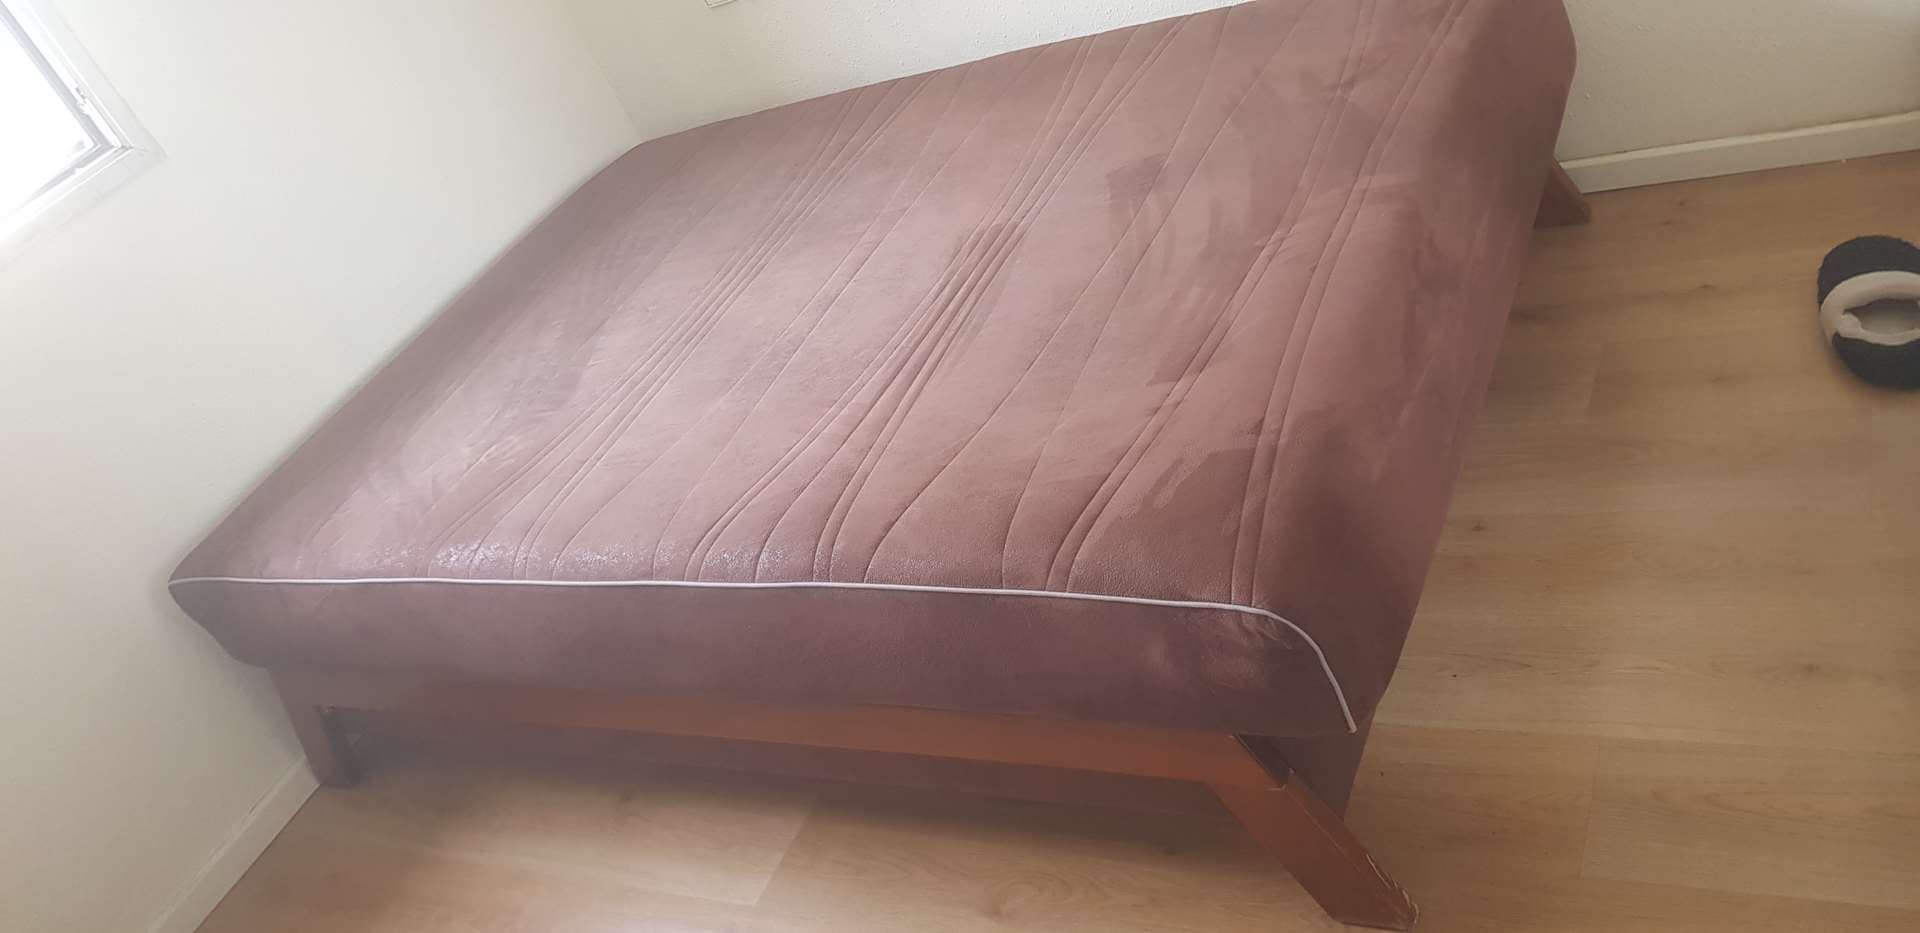 תמונה 3 ,מיטה וחצי של עמינח למכירה בראשון לציון ריהוט  מיטות